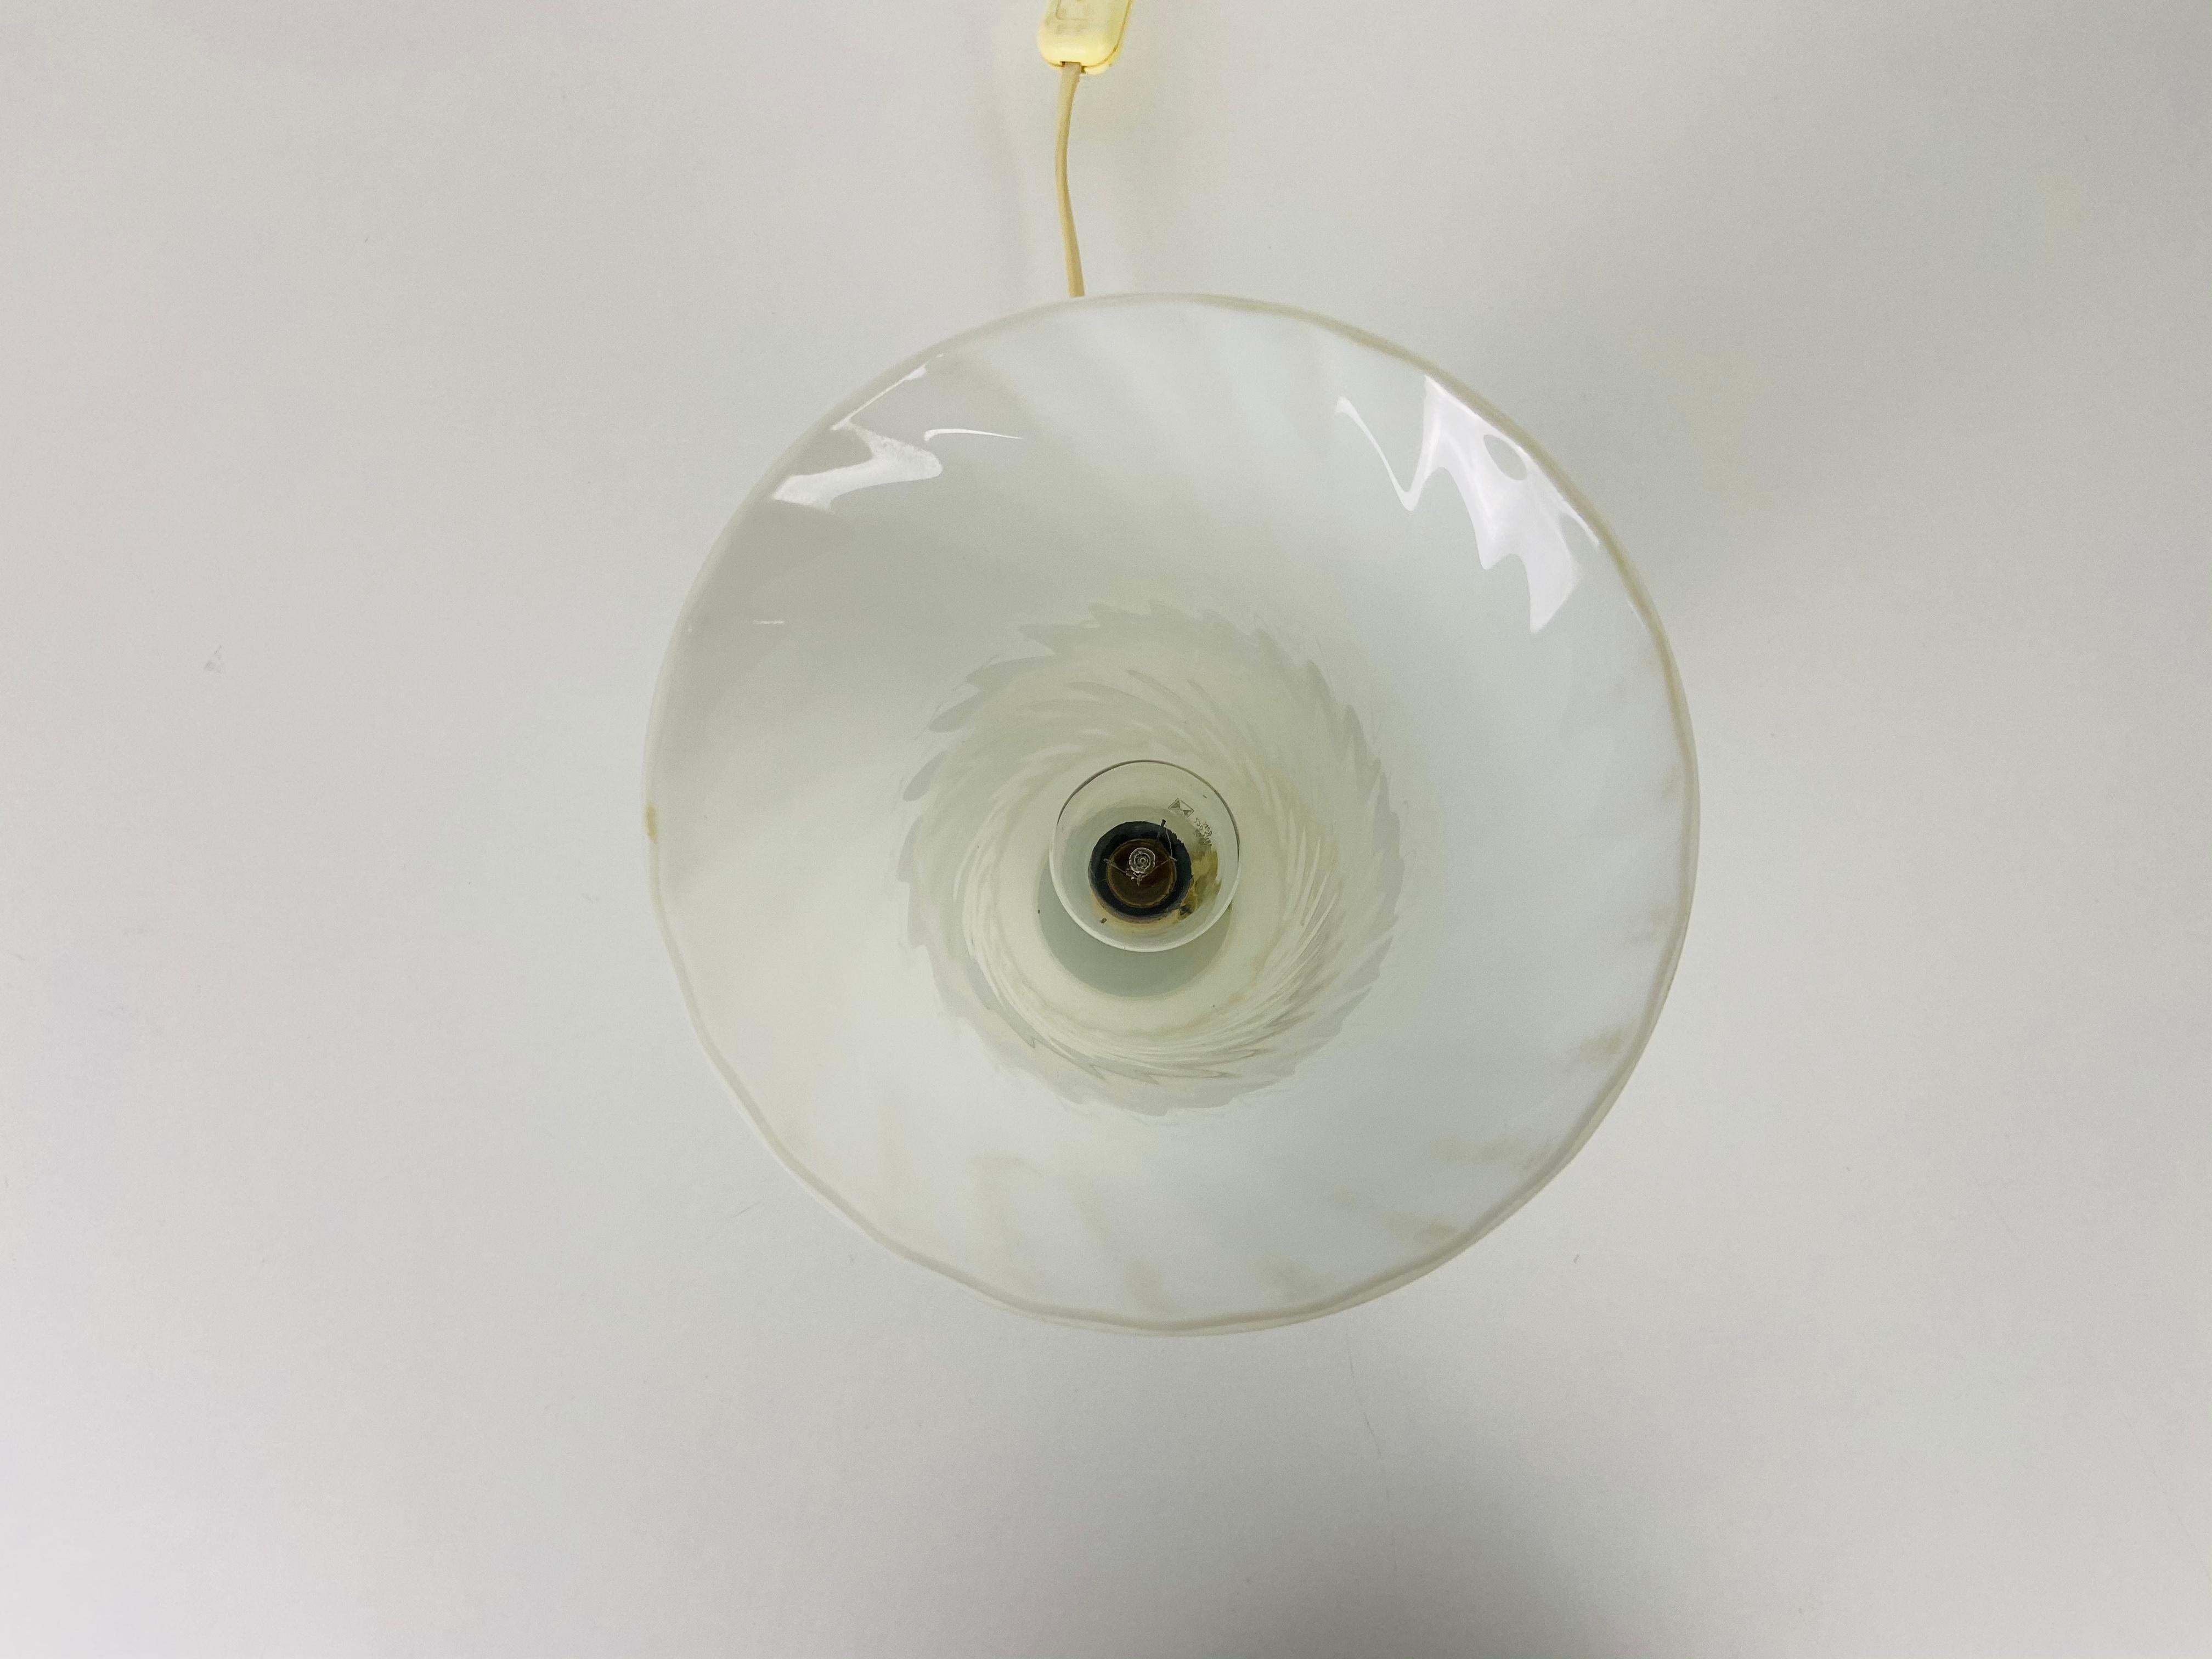 Belle lampe de table italienne par Vetri d'Arte Murano. Il a une forme extraordinaire de champignon. Très bon état vintage.

Les lampes nécessitent une ampoule E27. Très bon état vintage.

Expédition gratuite dans le monde entier.